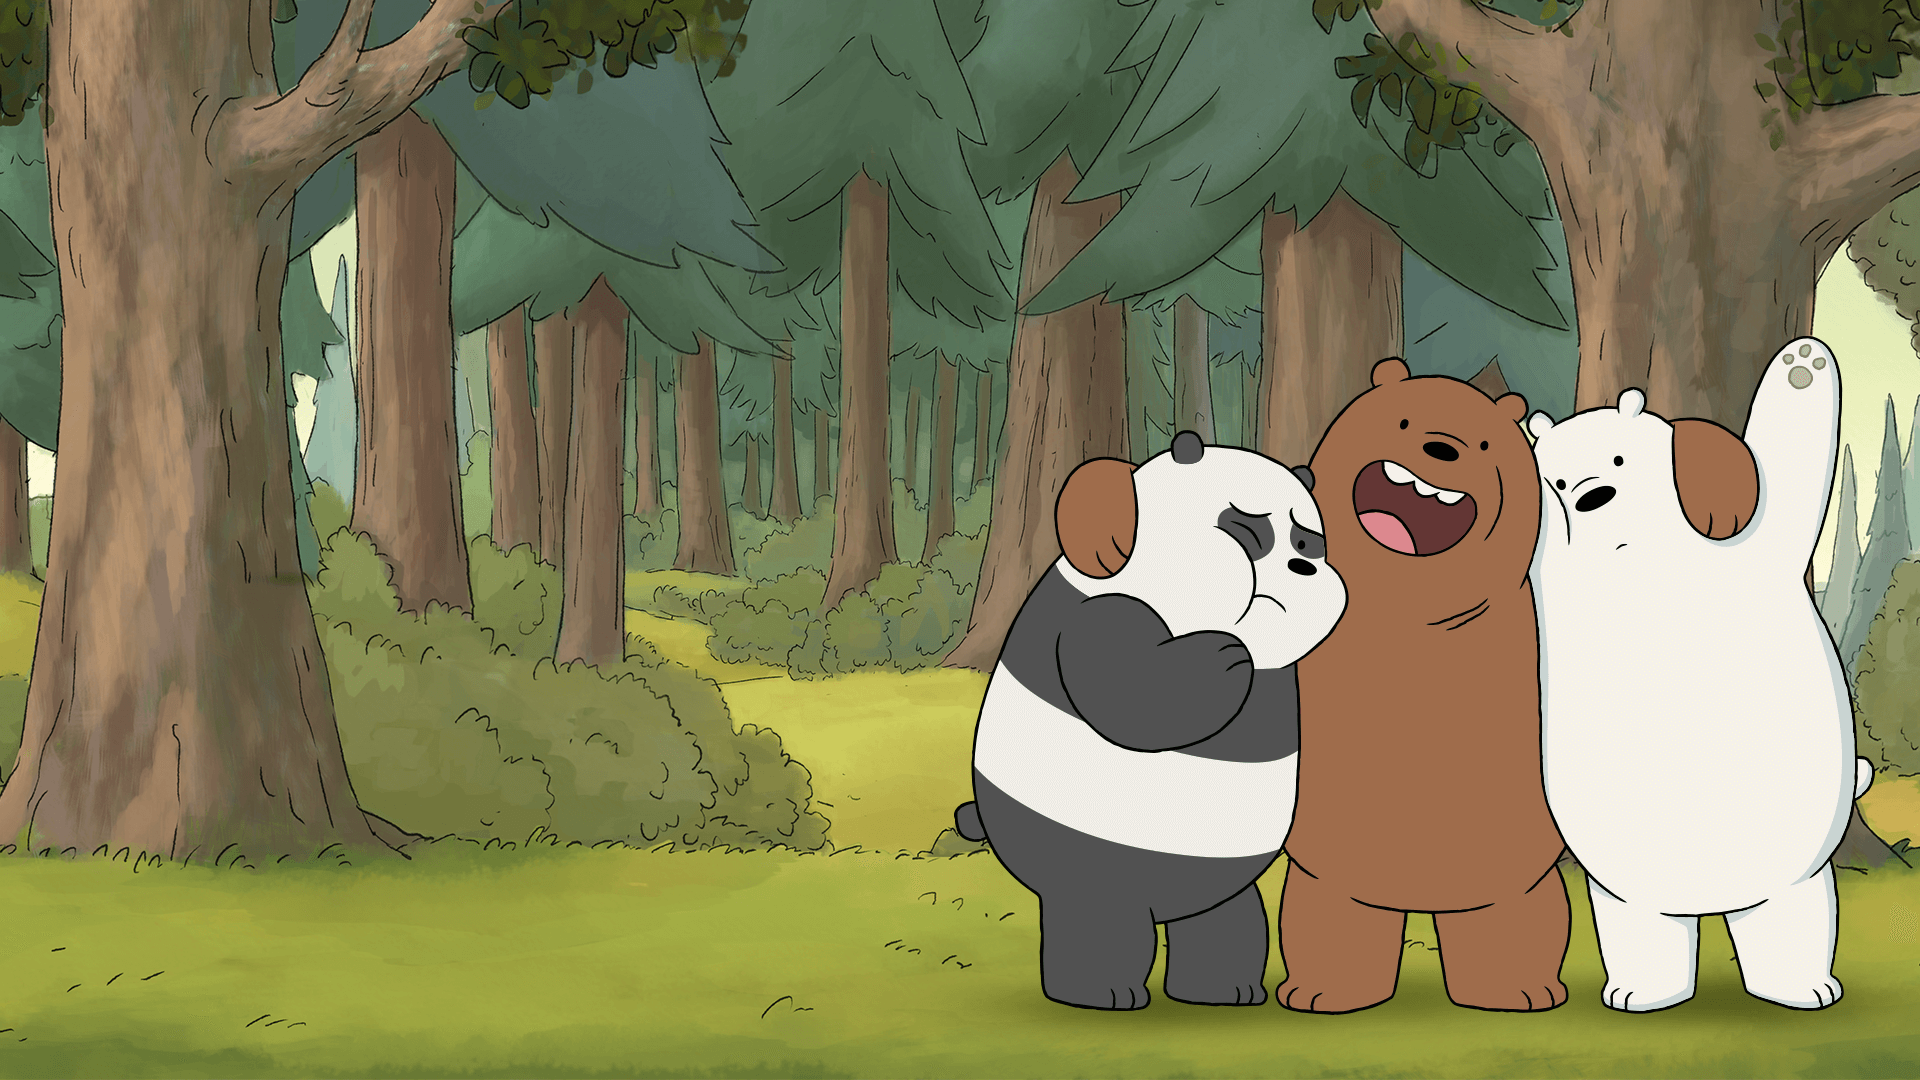 We Bare Bears là bộ phim hoạt hình thú vị với những câu chuyện đáng yêu của ba chú gấu Hồng, Xám và Vàng. Nếu bạn muốn biết thêm về chúng, hãy xem hình ảnh để thấy chúng trong những tình huống hài hước và đáng yêu.